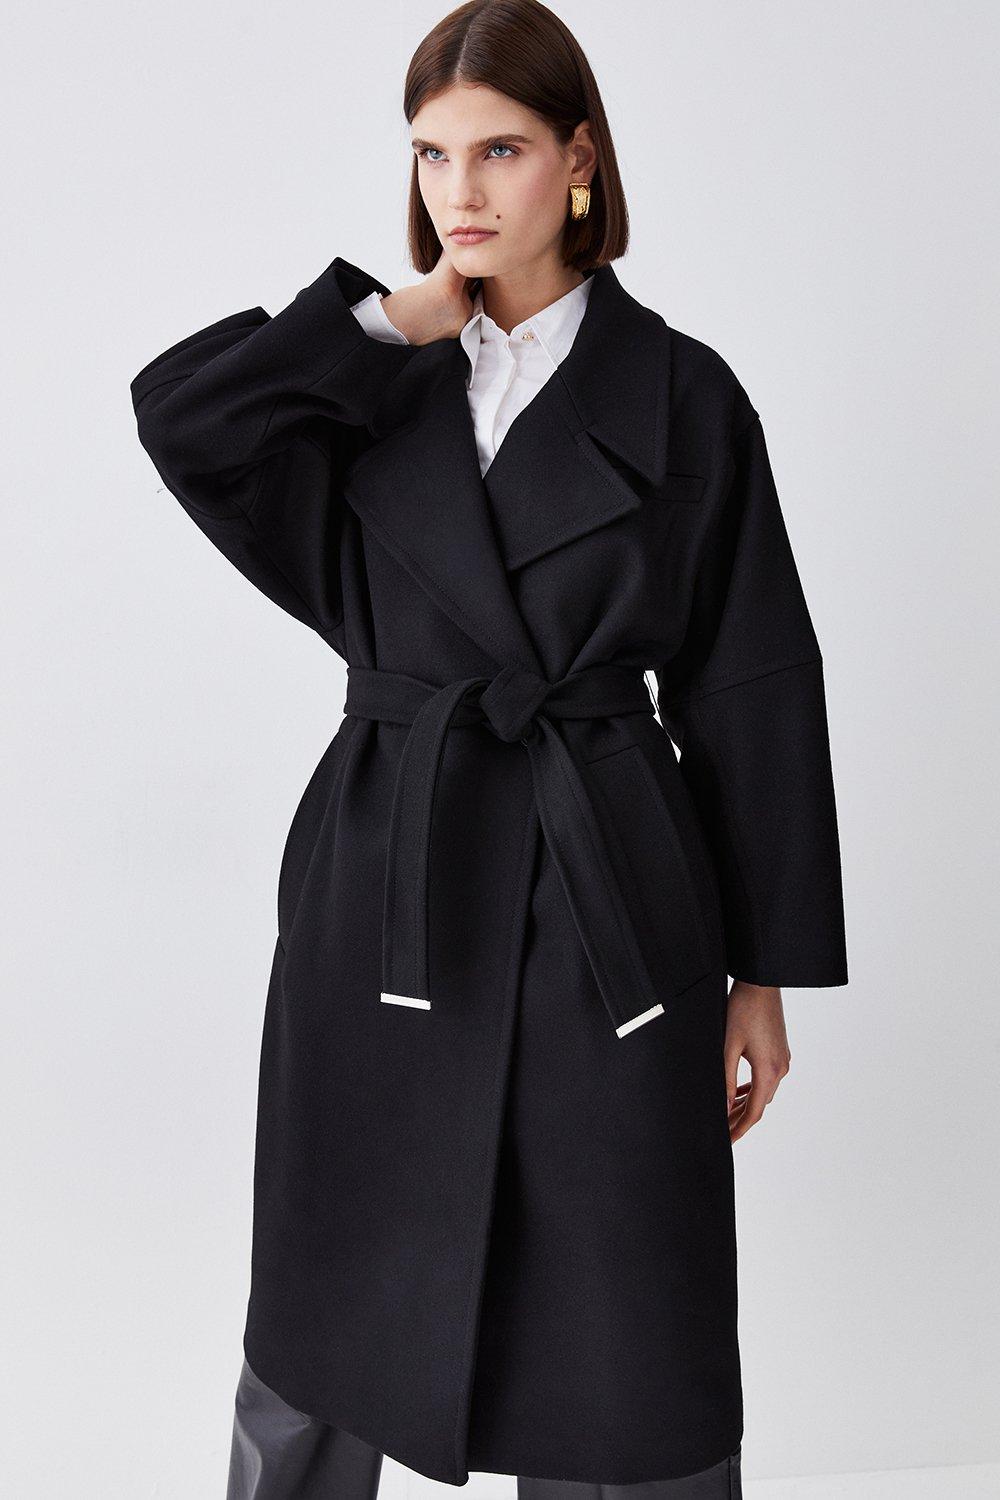 Jackets & Coats | Italian Manteco Wool Raglan Sleeve Coat | KarenMillen